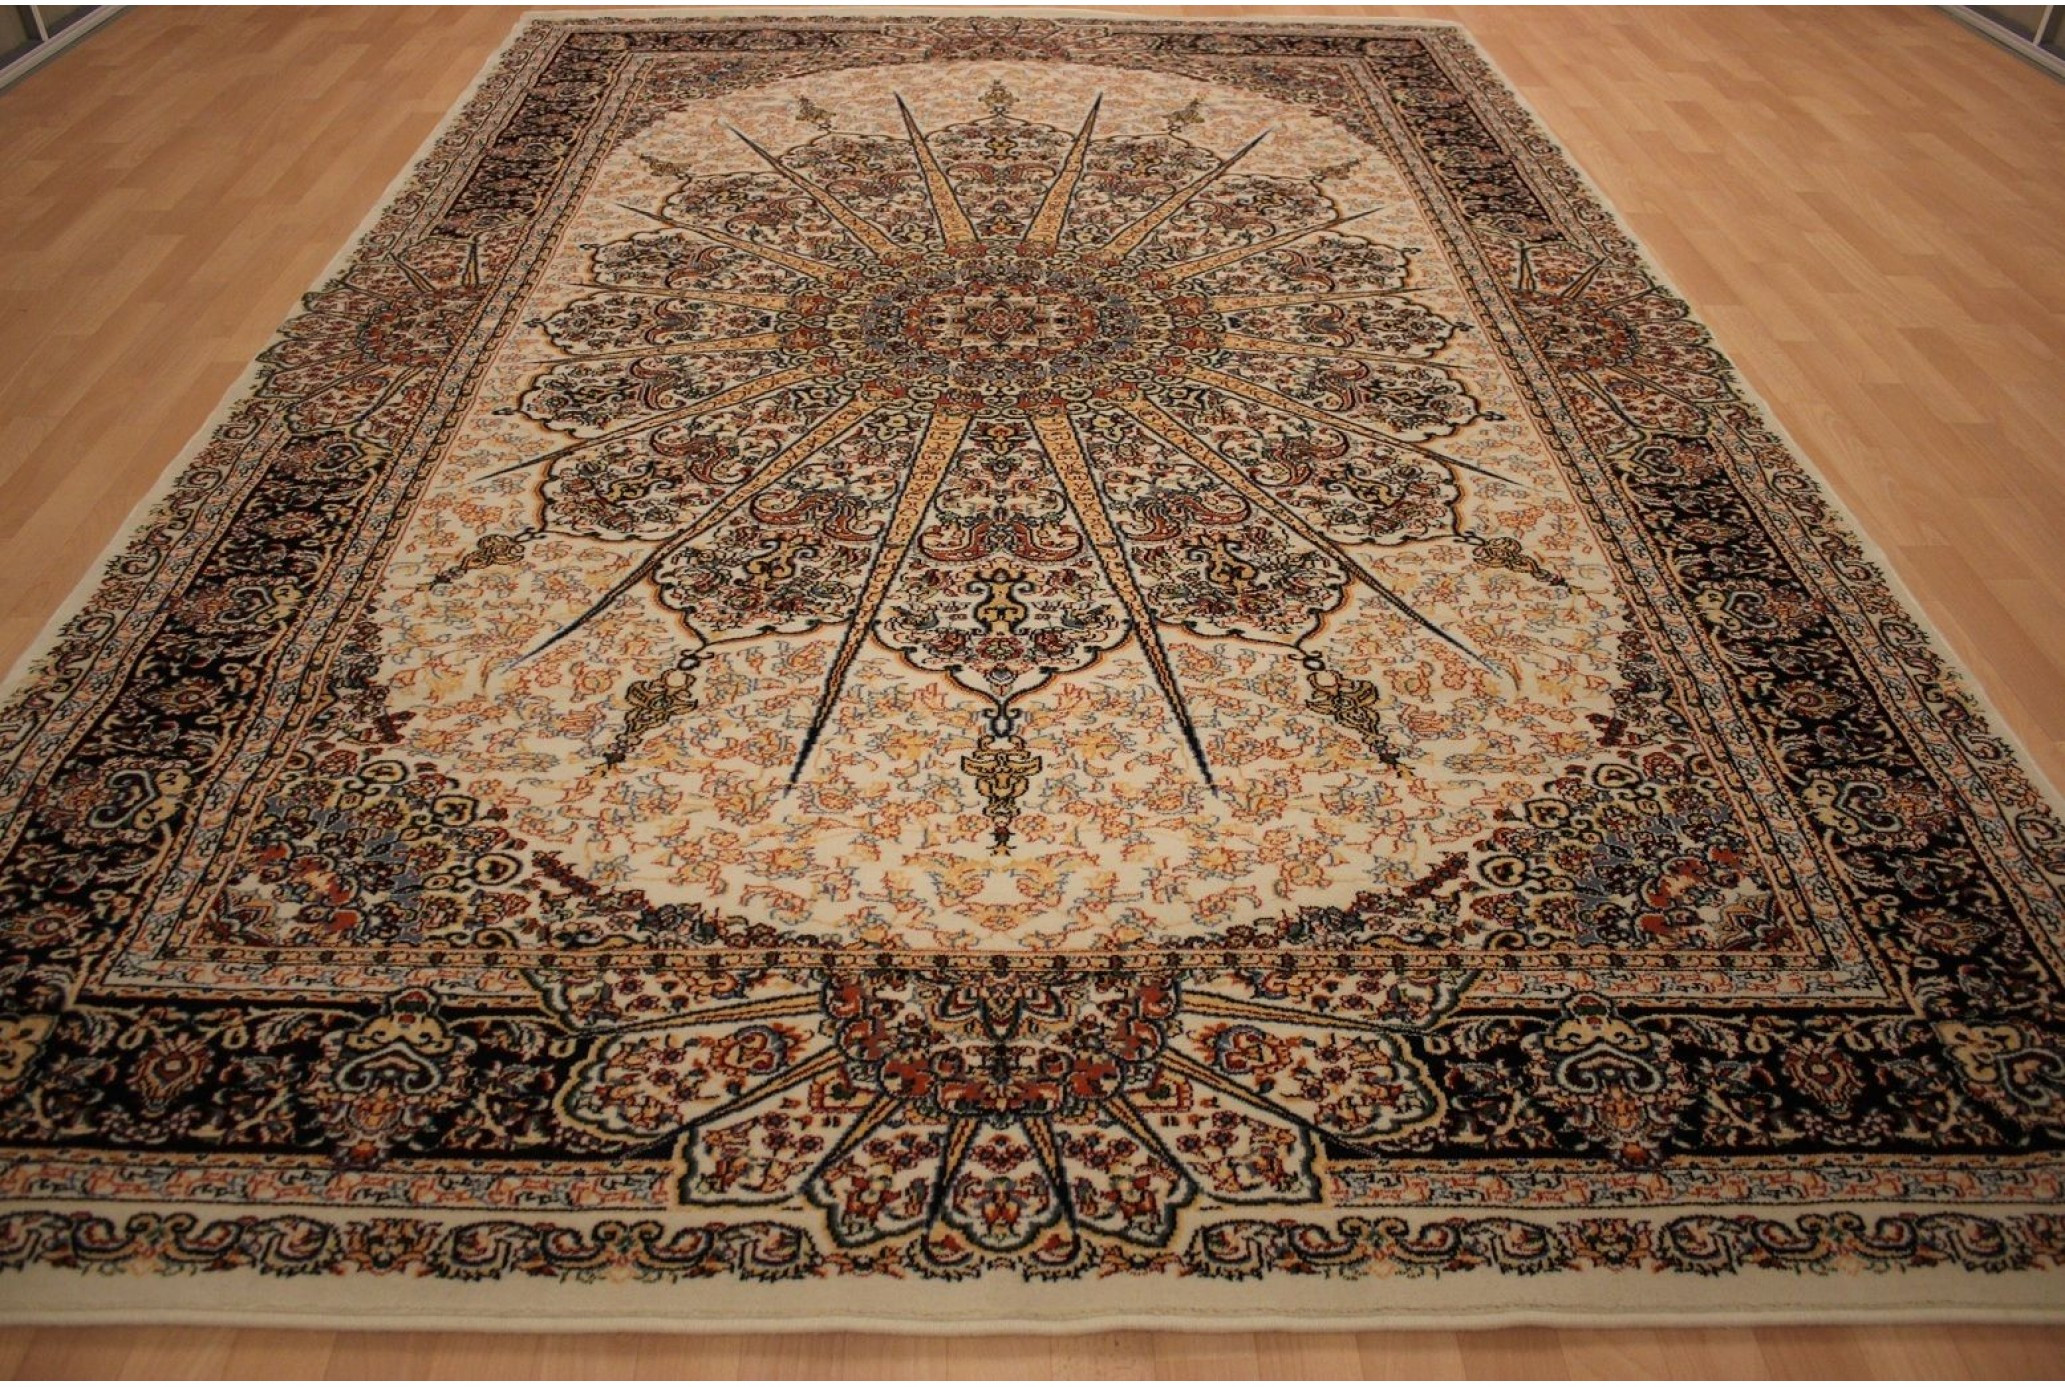 Teppich 200 X 300
 Teppich orientalisch 200x300 cm Wolle braun Dichte 1